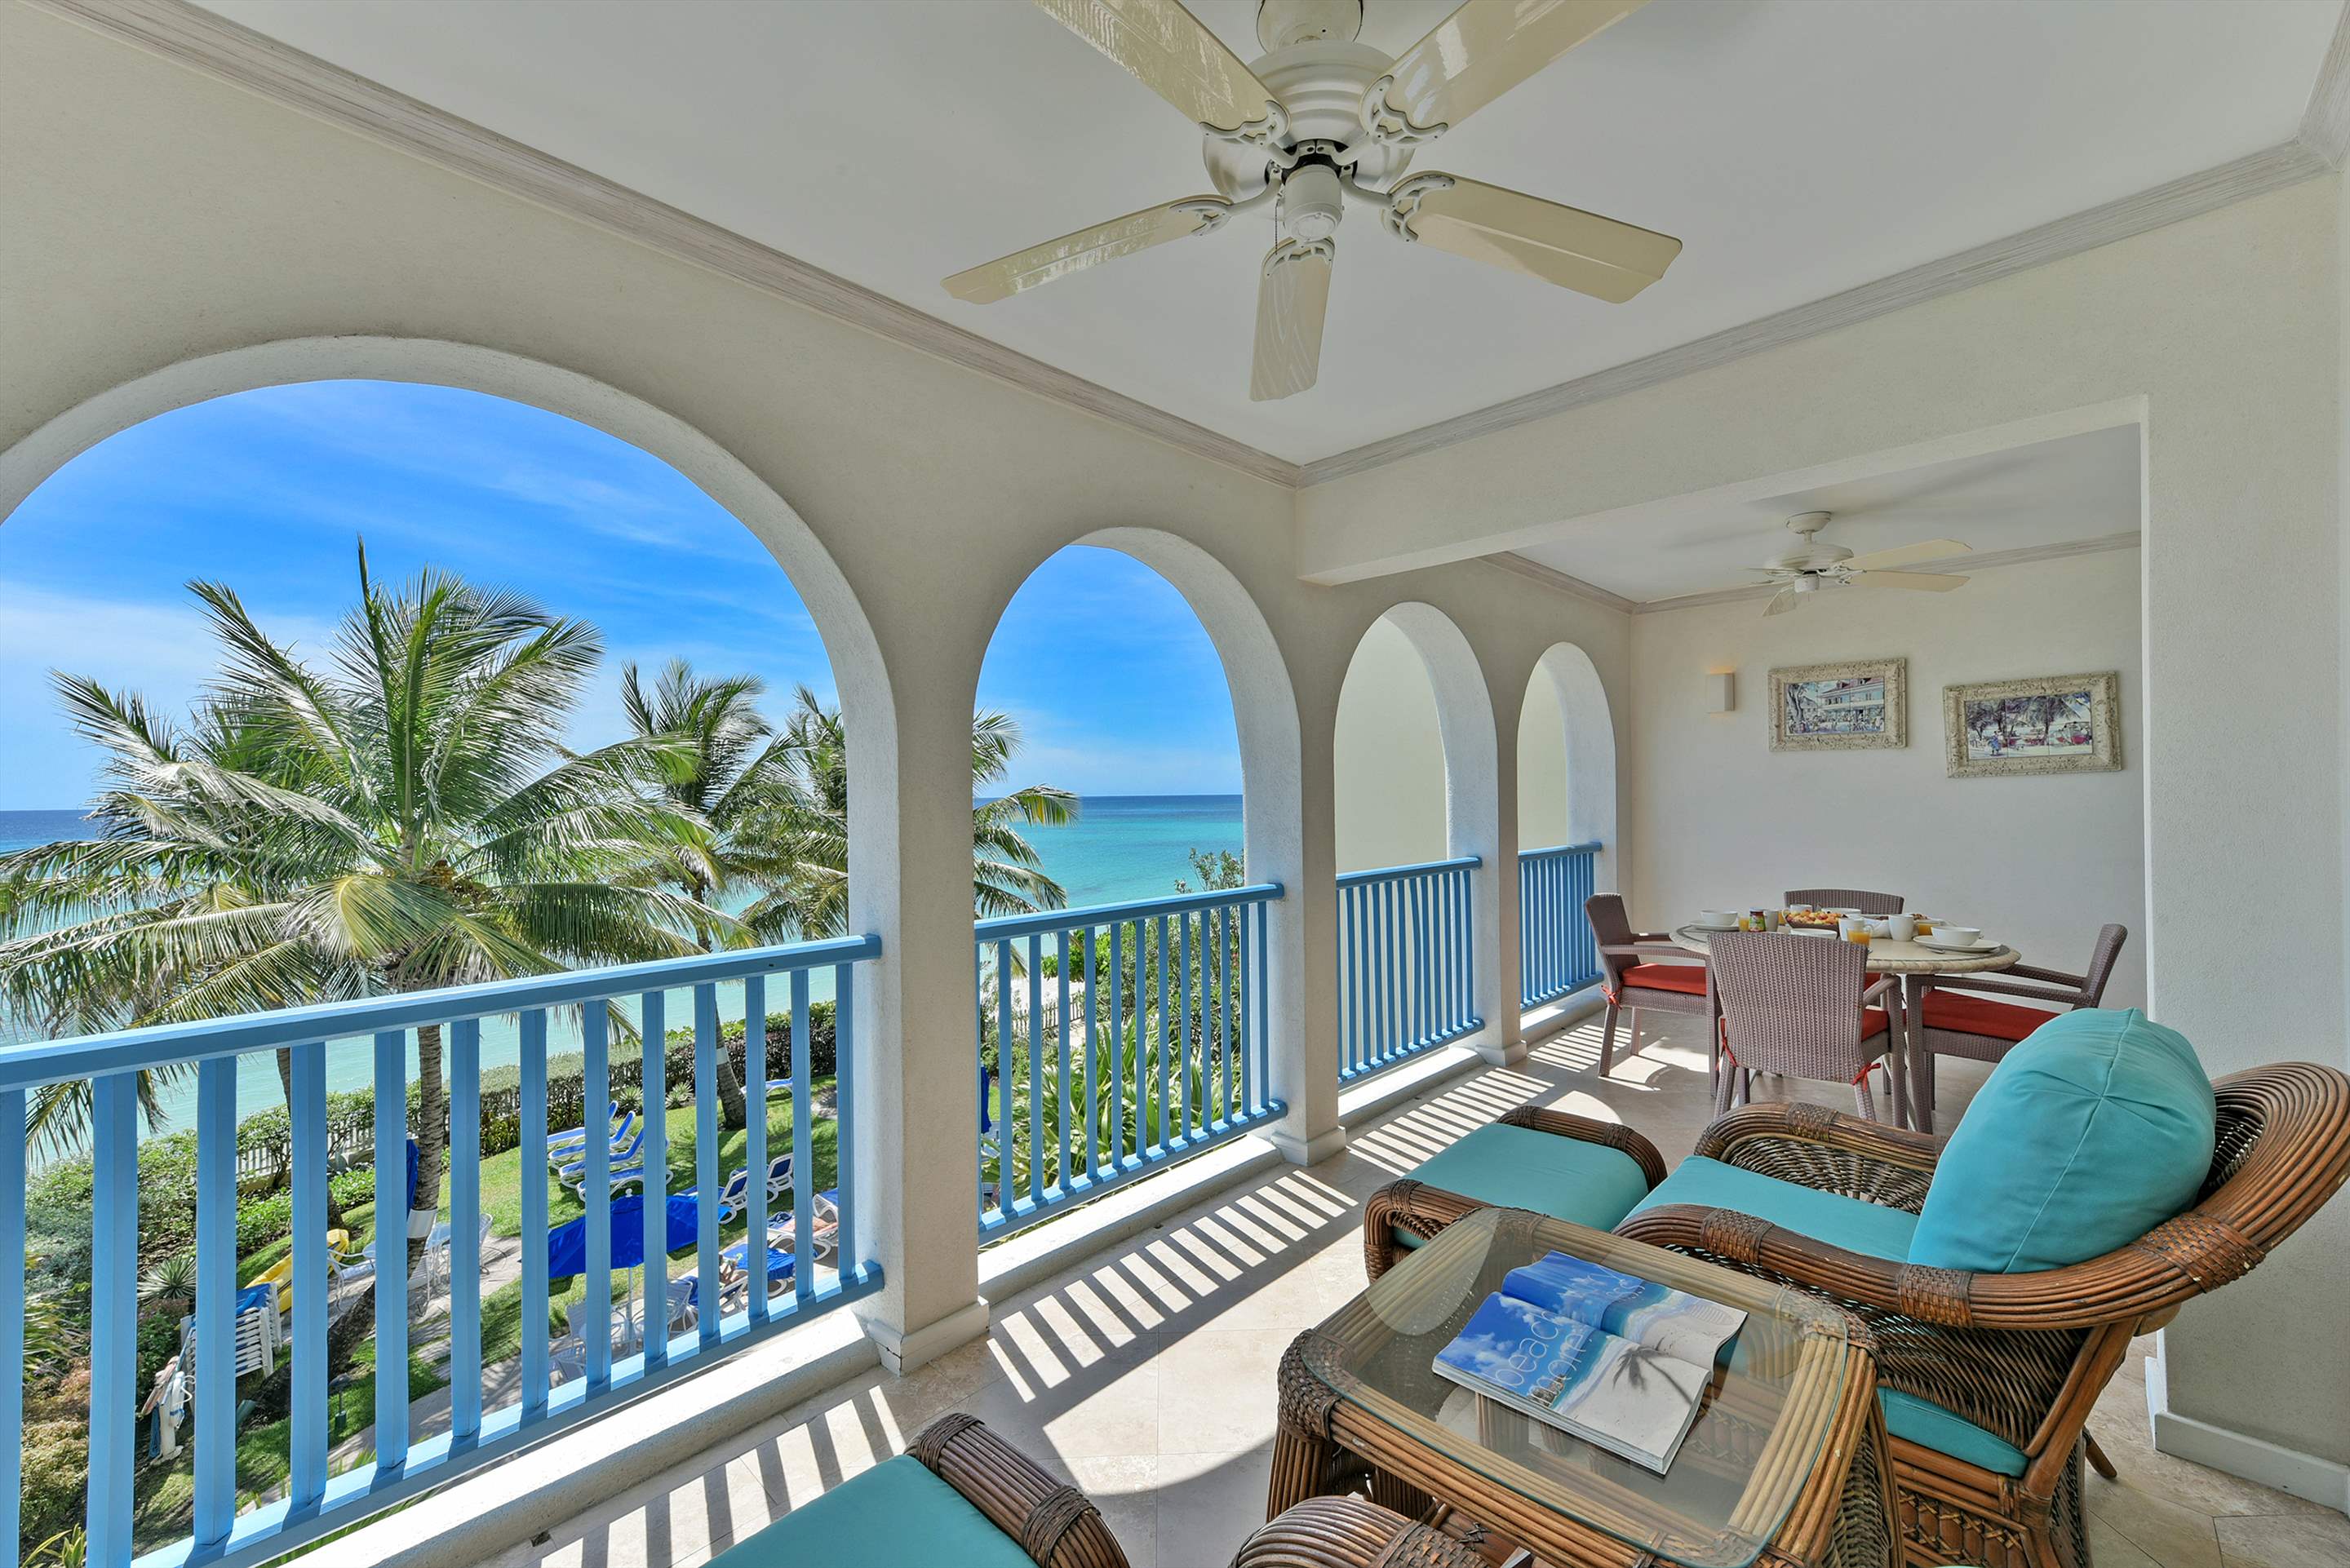 Maxwell Beach Villas 302, 2 bedroom, 2 bedroom apartment in St. Lawrence Gap & South Coast, Barbados Photo #3